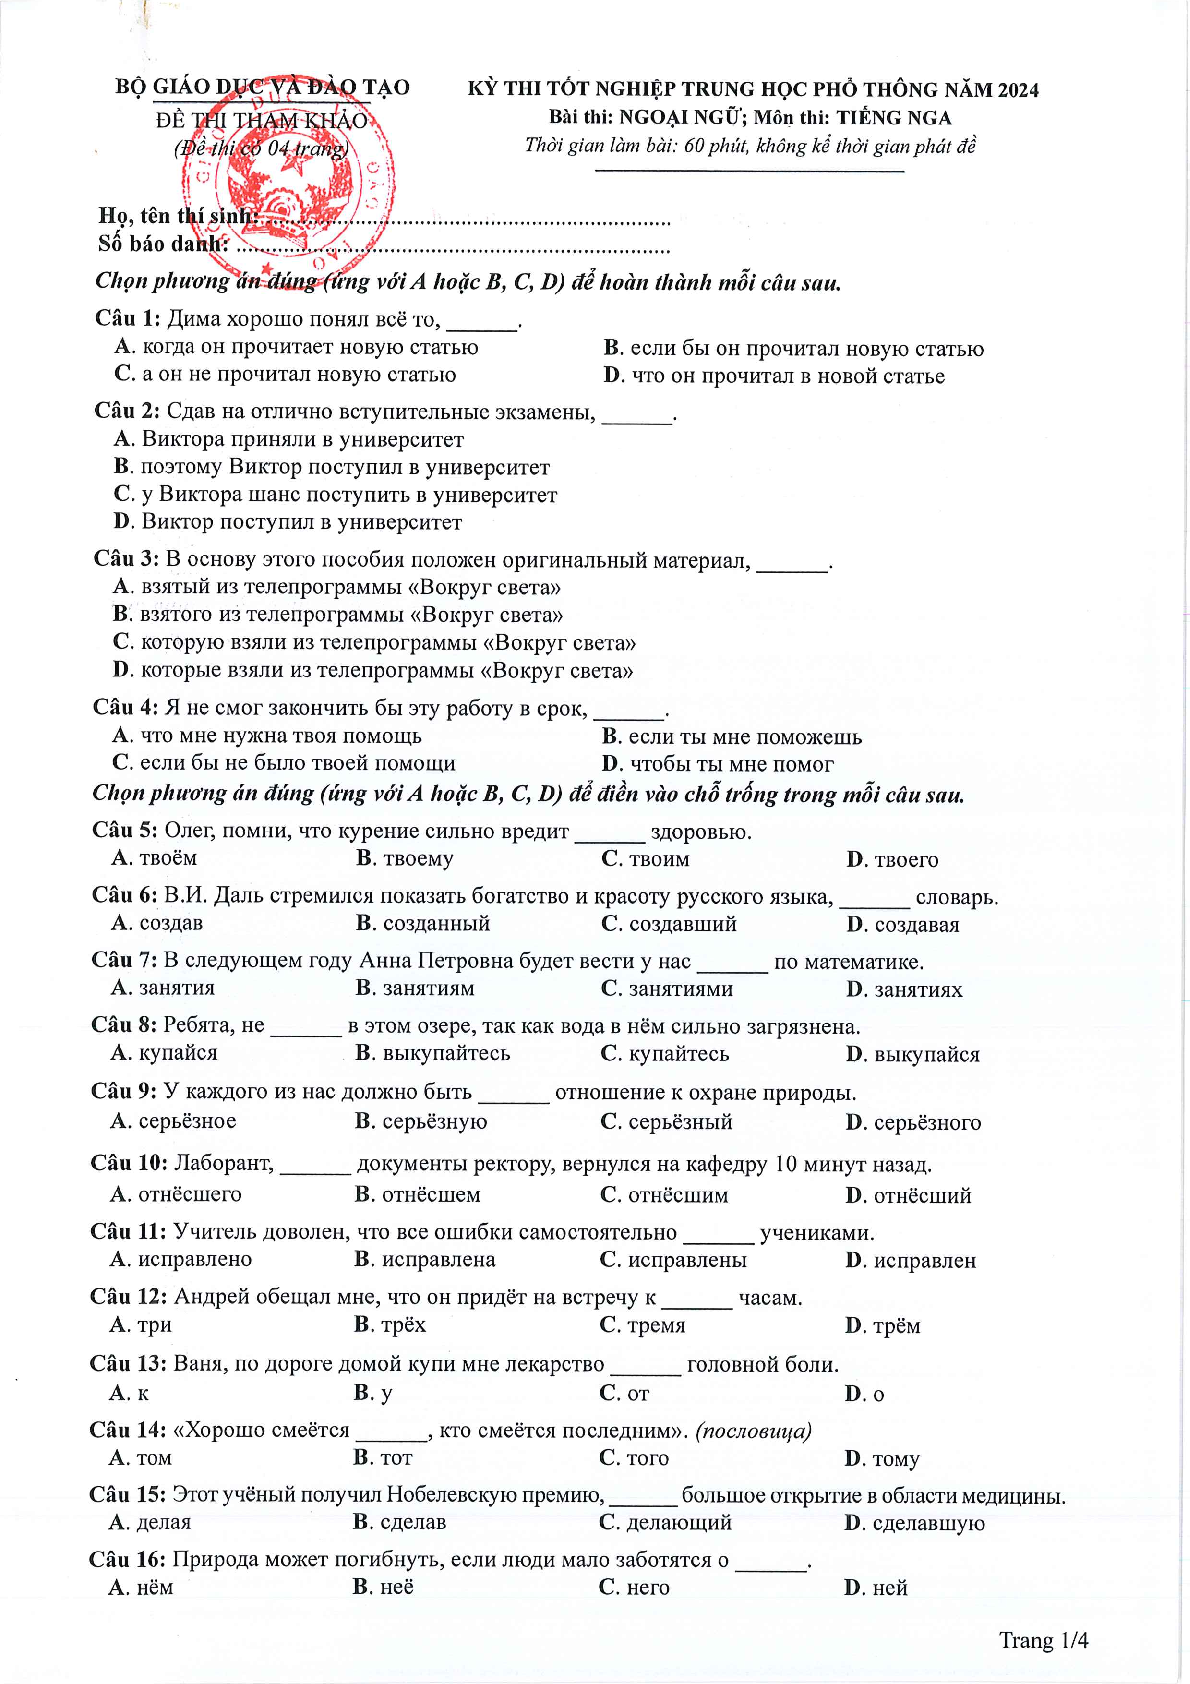 Đề thi tham khảo Tiếng Nga 2024 có đáp án (trang 1)